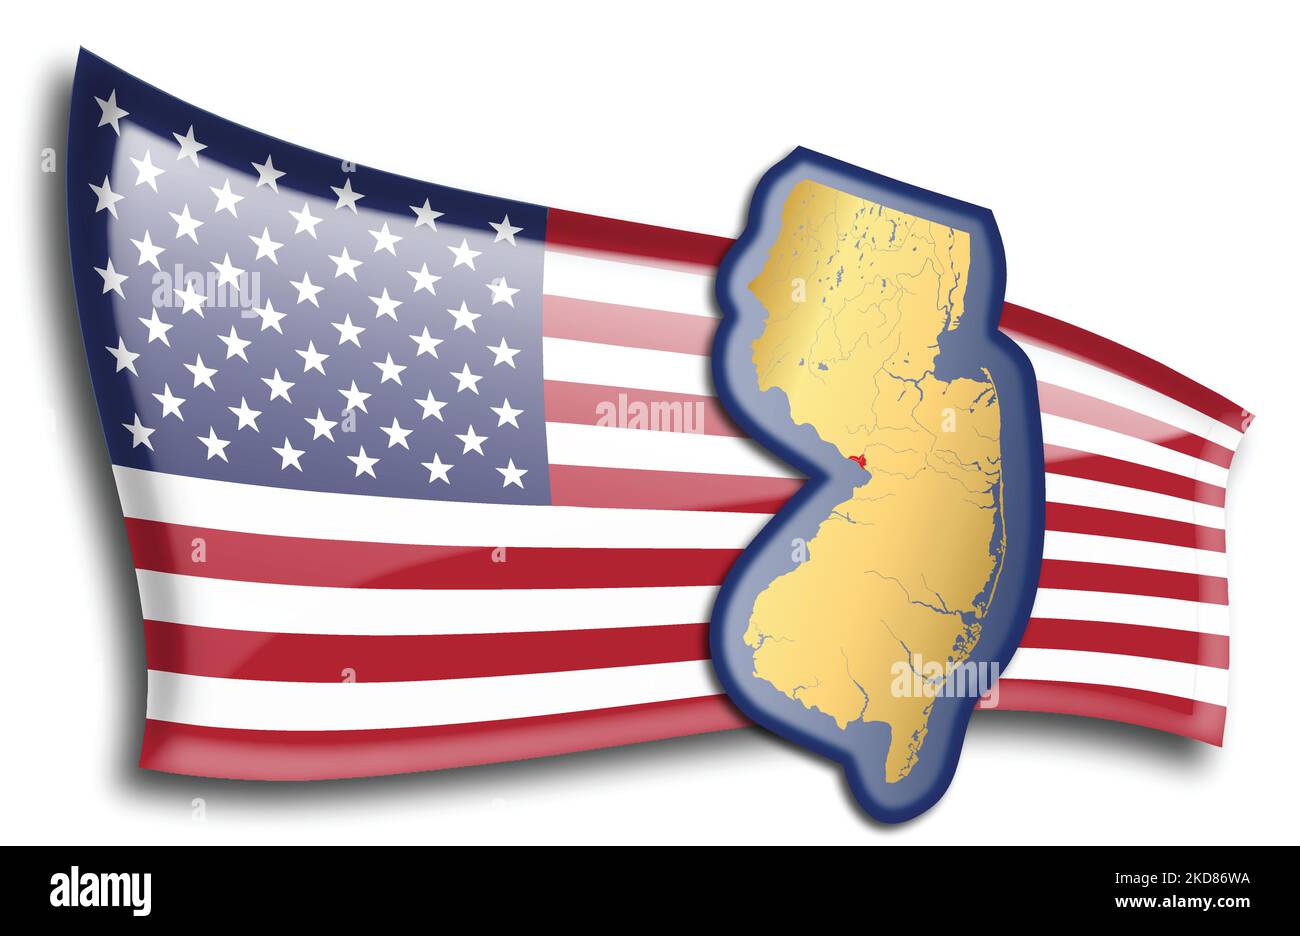 stati Uniti - mappa del New Jersey contro una bandiera americana. Fiumi e laghi sono mostrati sulla mappa. La bandiera americana e la mappa dello stato possono essere utilizzate separatamente Illustrazione Vettoriale